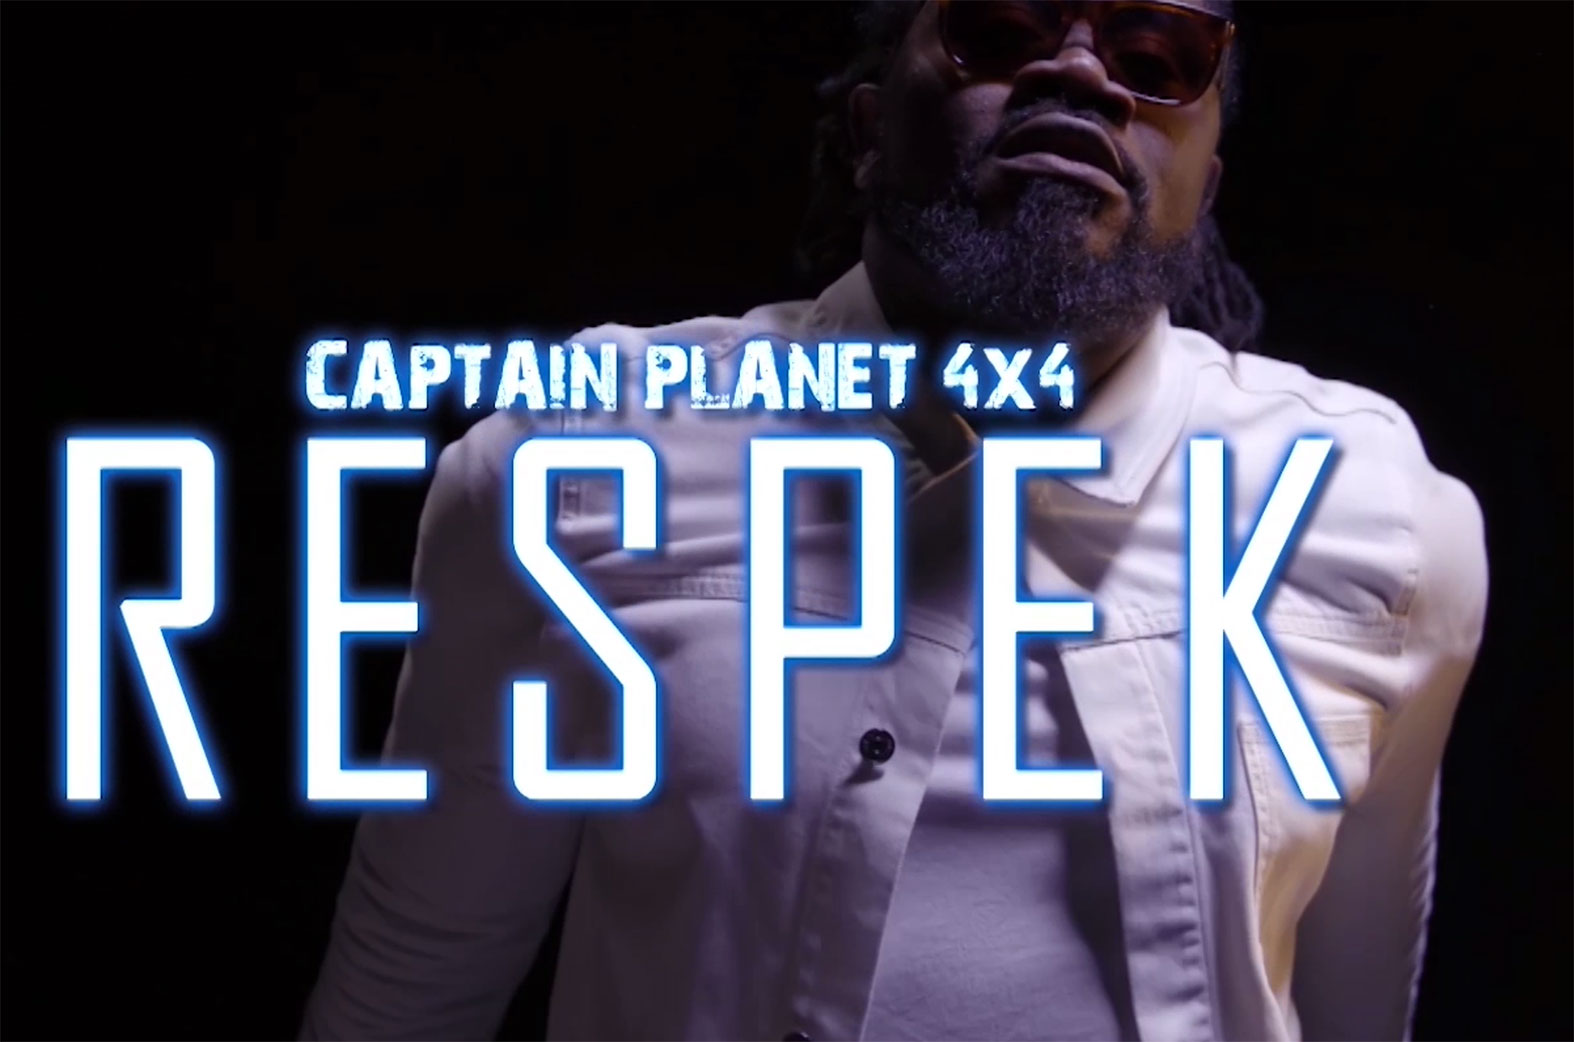 Respek by Captain Planet (4x4)